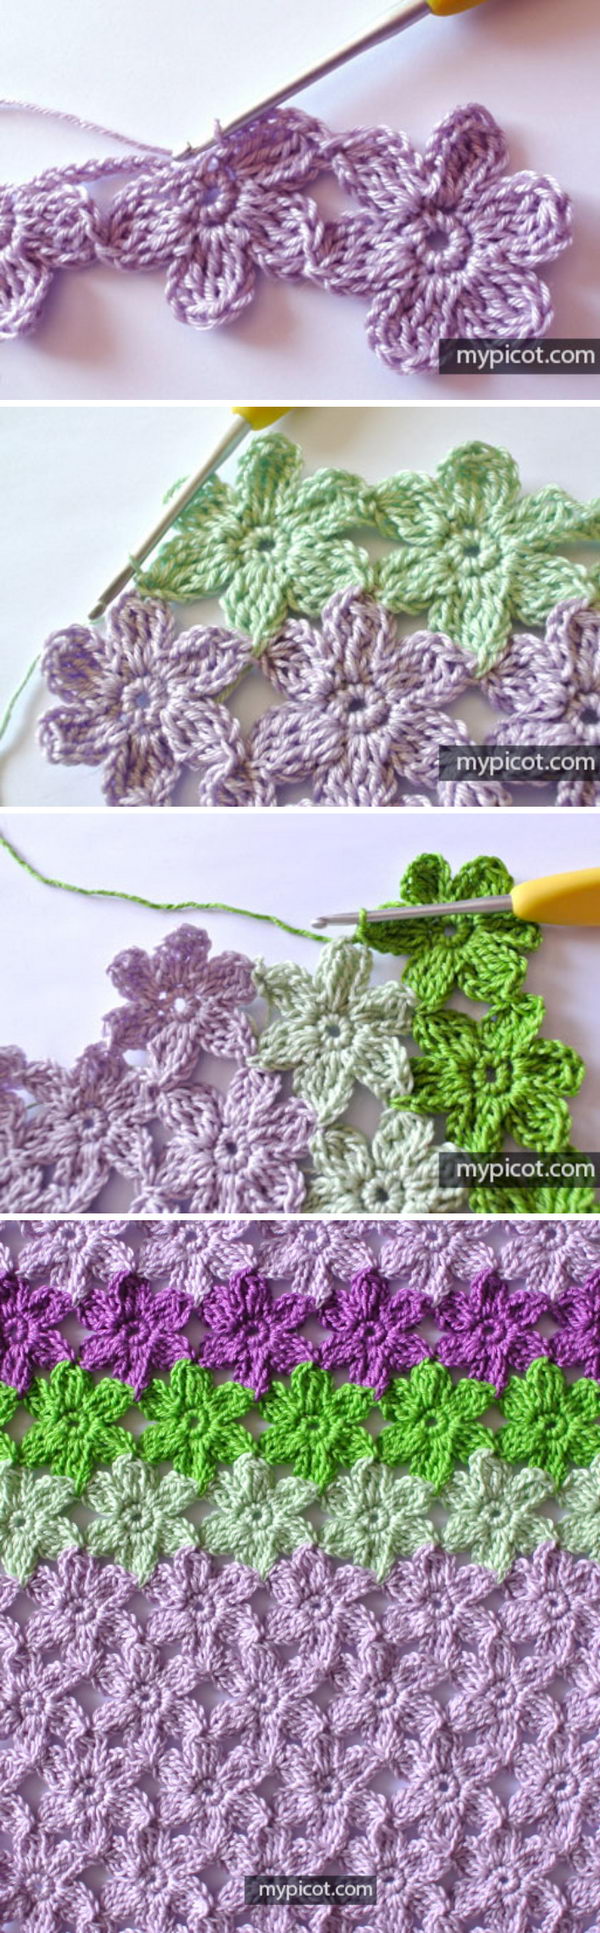 crochet flower stitch patterns 7